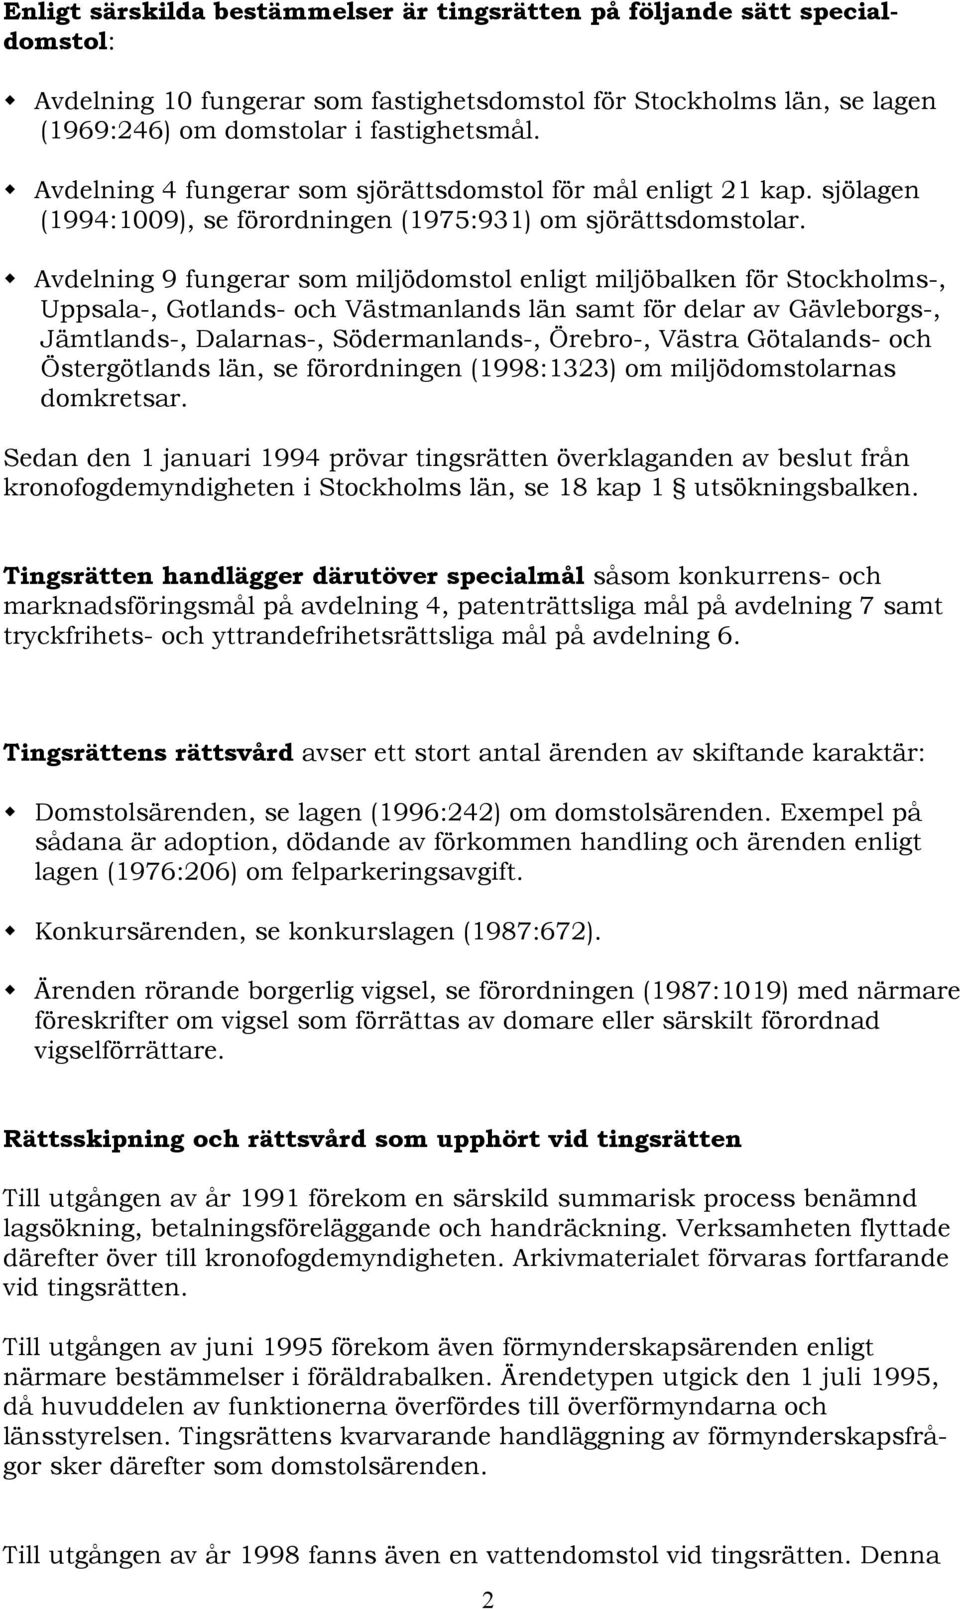 Avdelning 9 fungerar som miljödomstol enligt miljöbalken för Stockholms-, Uppsala-, Gotlands- och Västmanlands län samt för delar av Gävleborgs-, Jämtlands-, Dalarnas-, Södermanlands-, Örebro-,